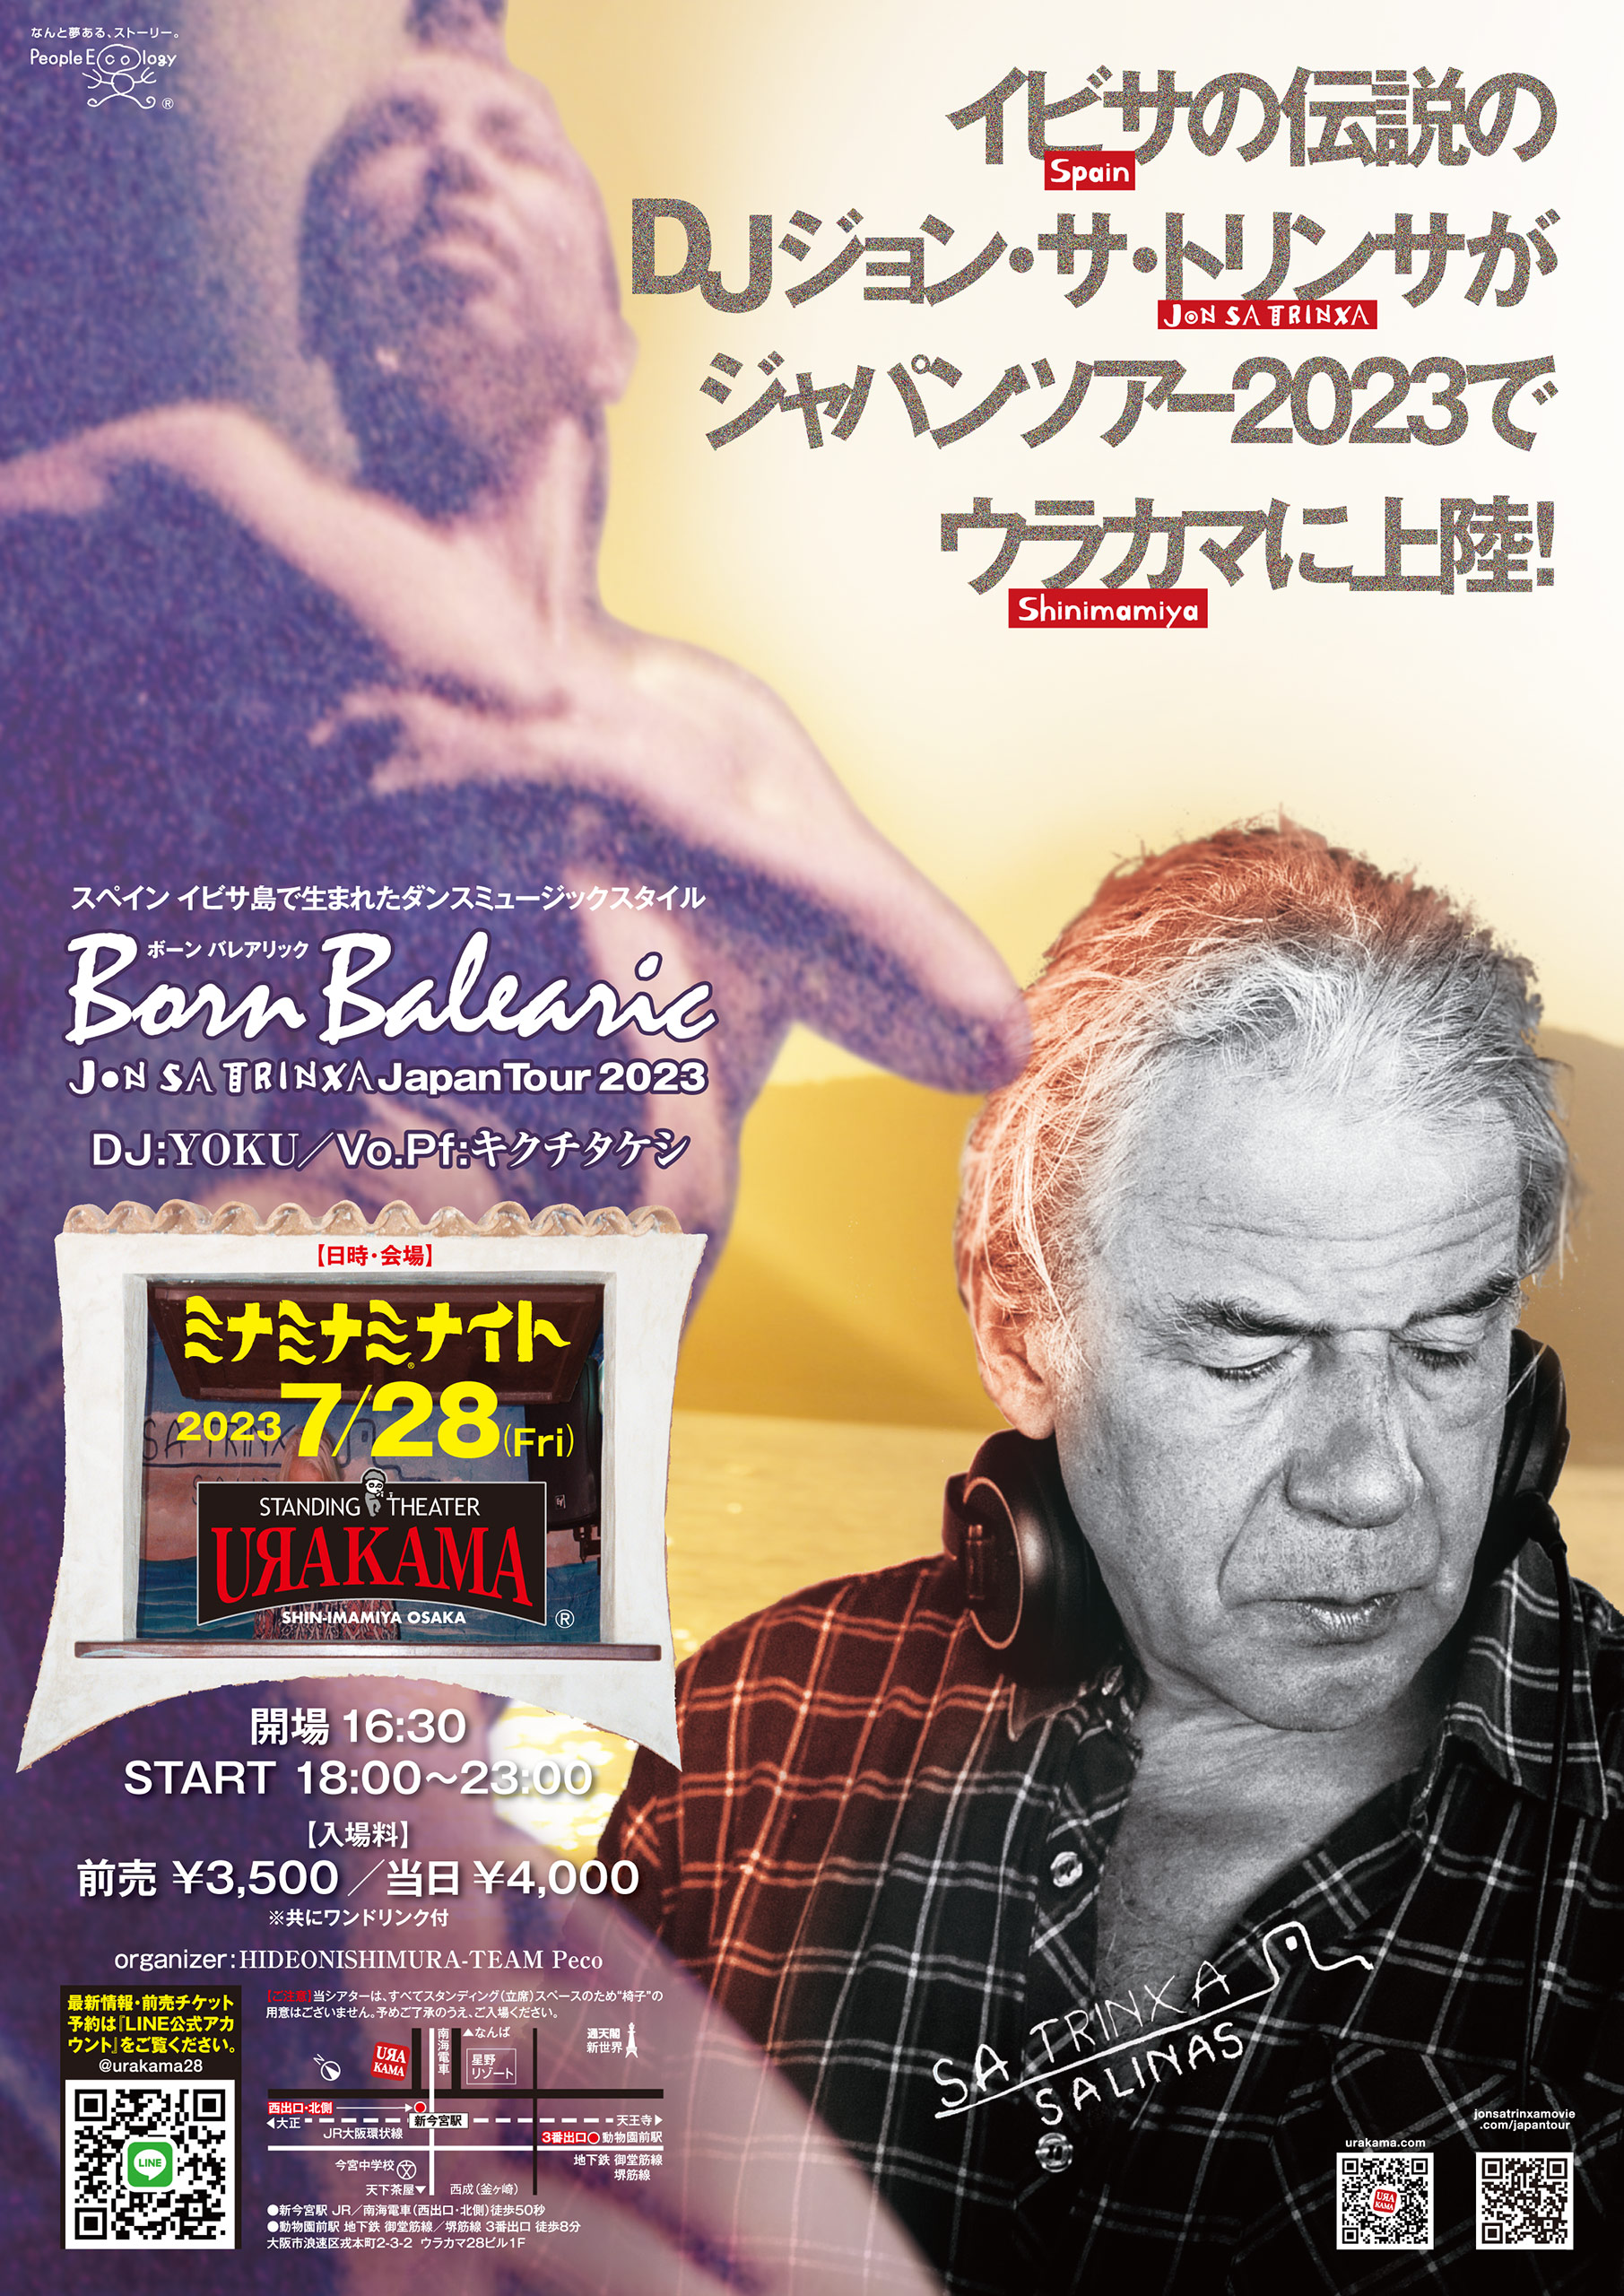 2023年7月28日［金］開催『ミナミナミナイト』Jon Sa Trinxa Born Balearic Japan Tour 2023 in URAKAMA